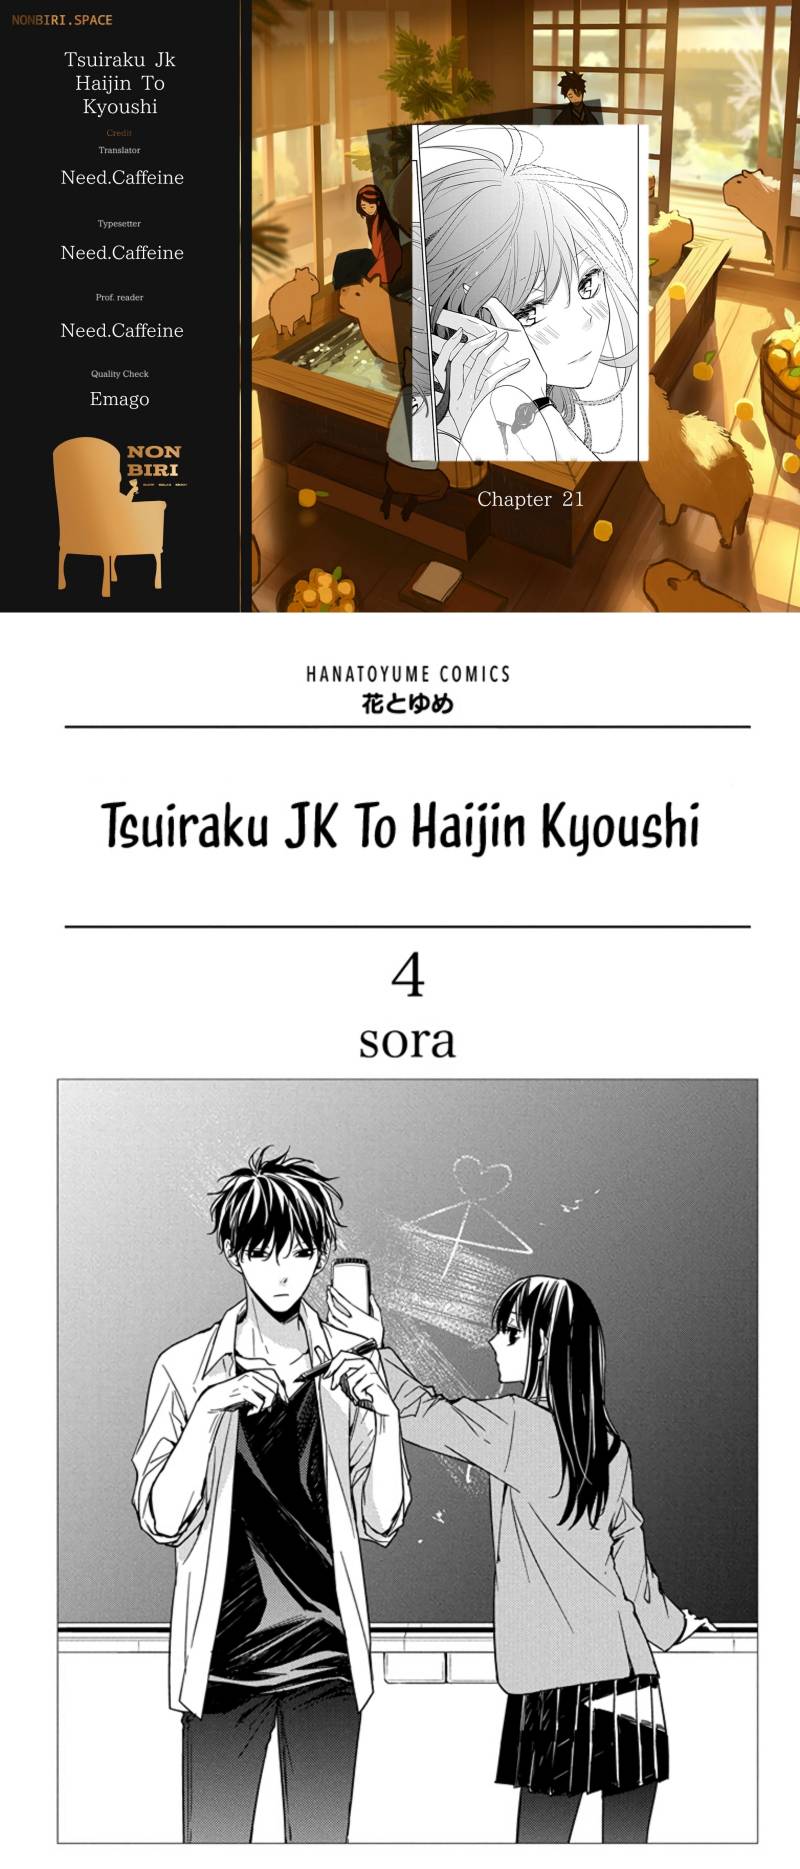 Tsuiraku JK to Haijin Kyoushi Chapter 21